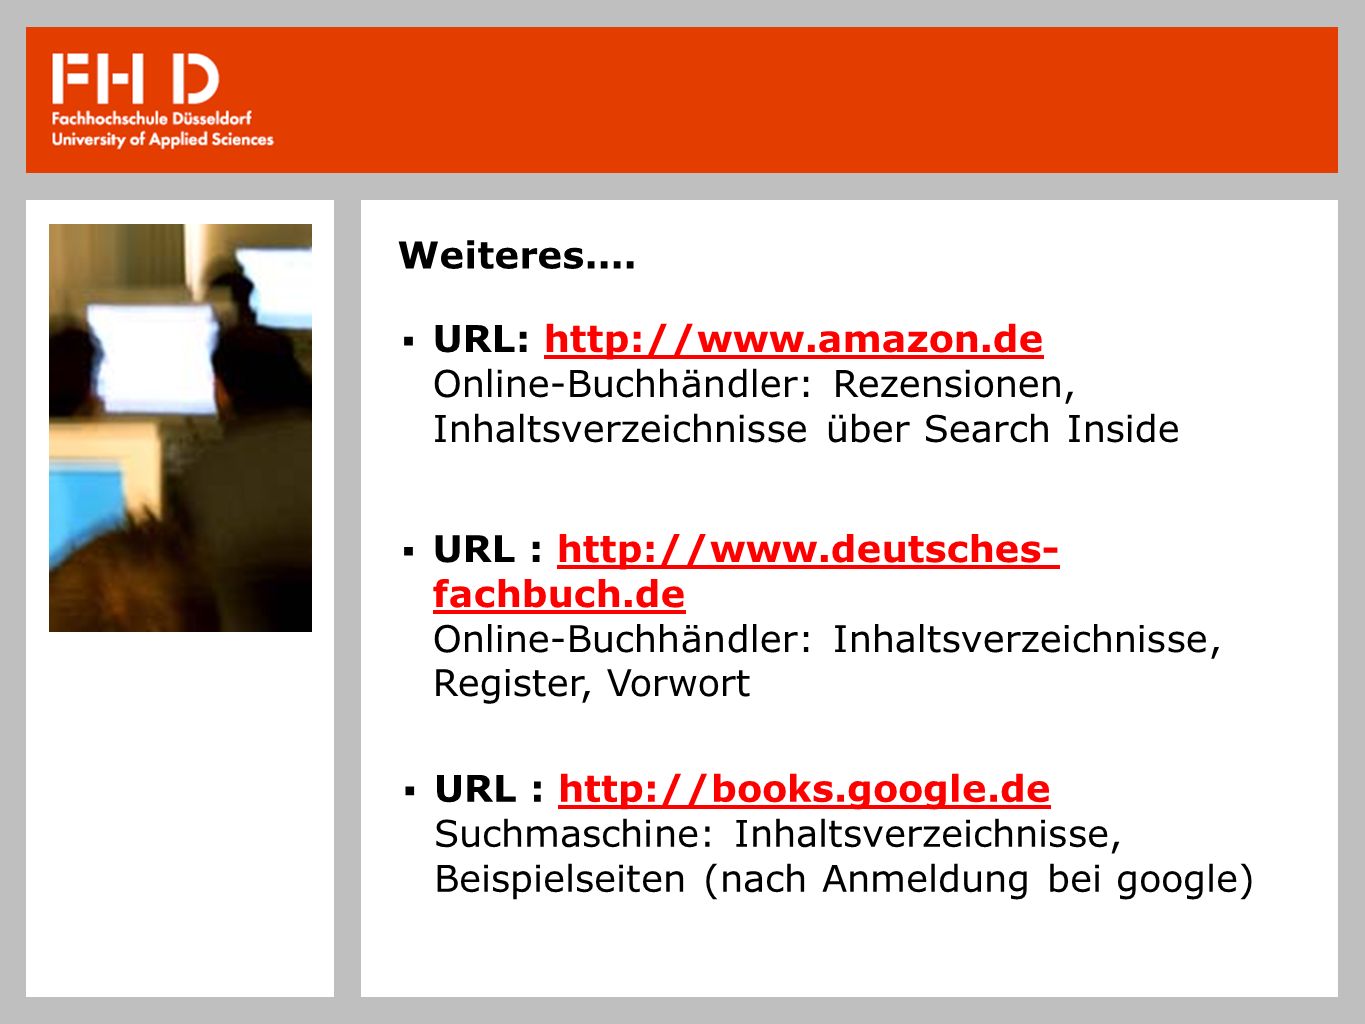 Weiteres.... URL:   Online-Buchhändler: Rezensionen, Inhaltsverzeichnisse über Search Inside.